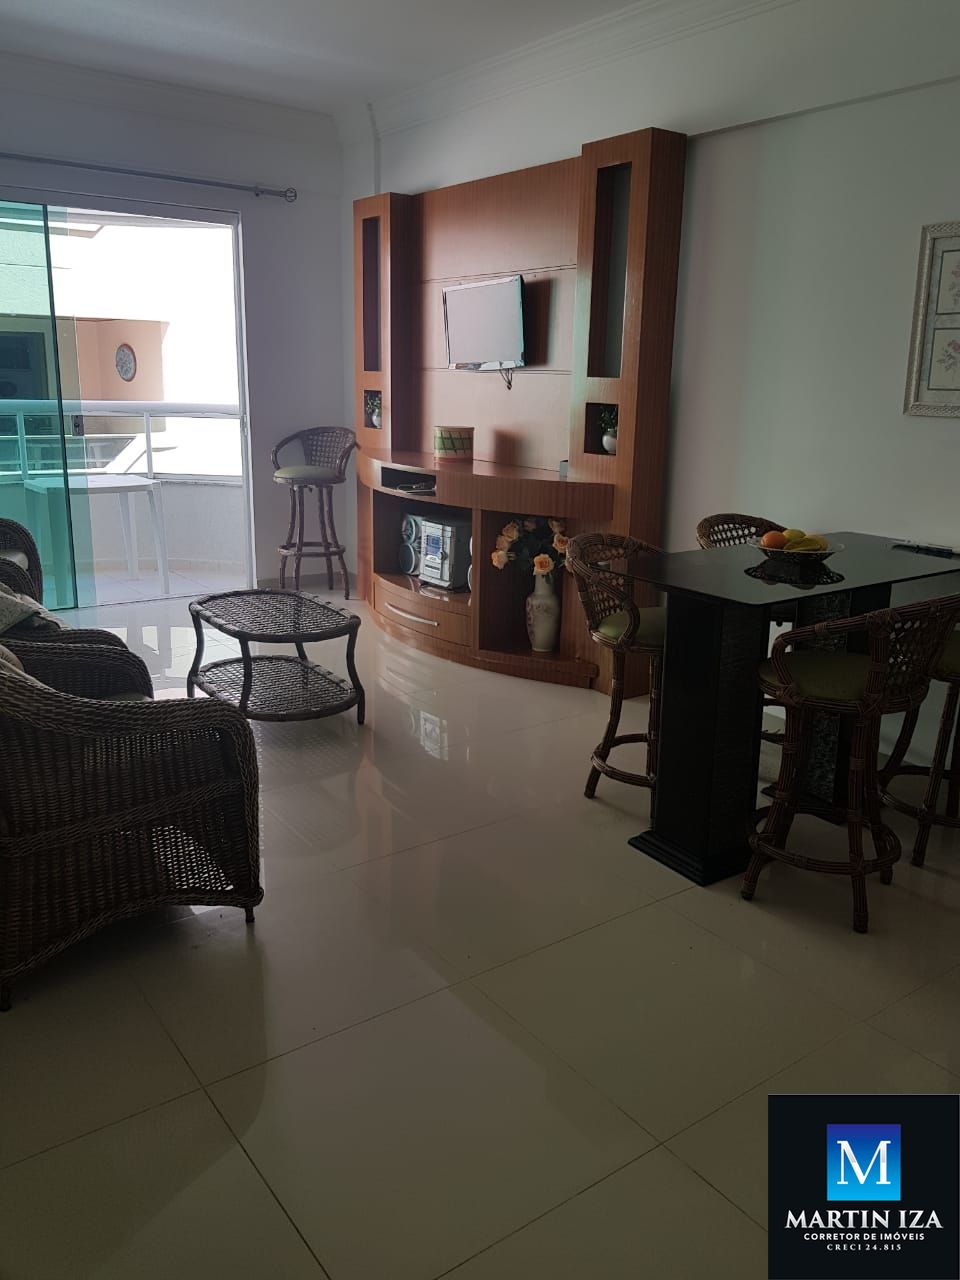 Apartamento com 2 Dormitórios para alugar, 70 m² por R$ 350,00